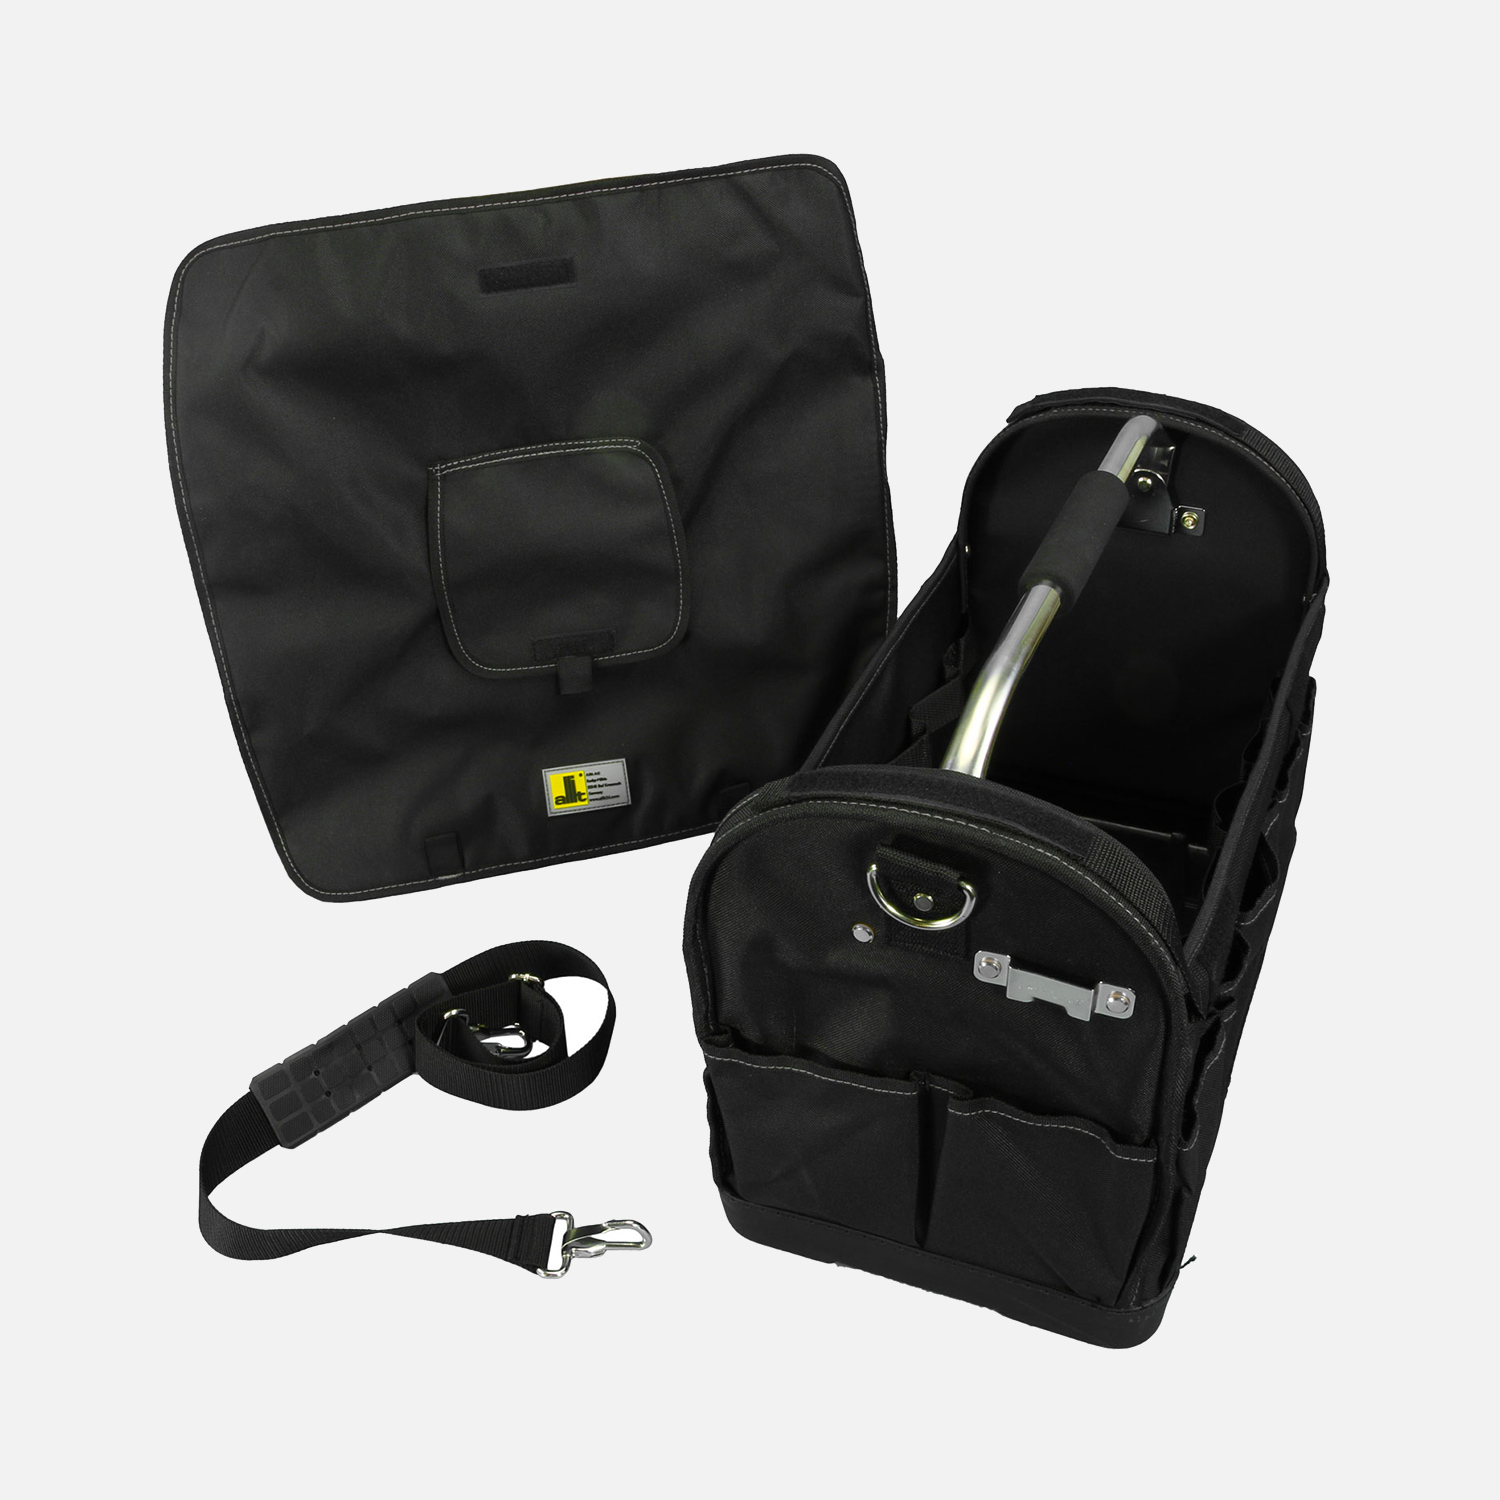 1 Allit Premium Textil-Werkzeugtasche - McPlus Bag >C< 20-1 - schwarz/silber